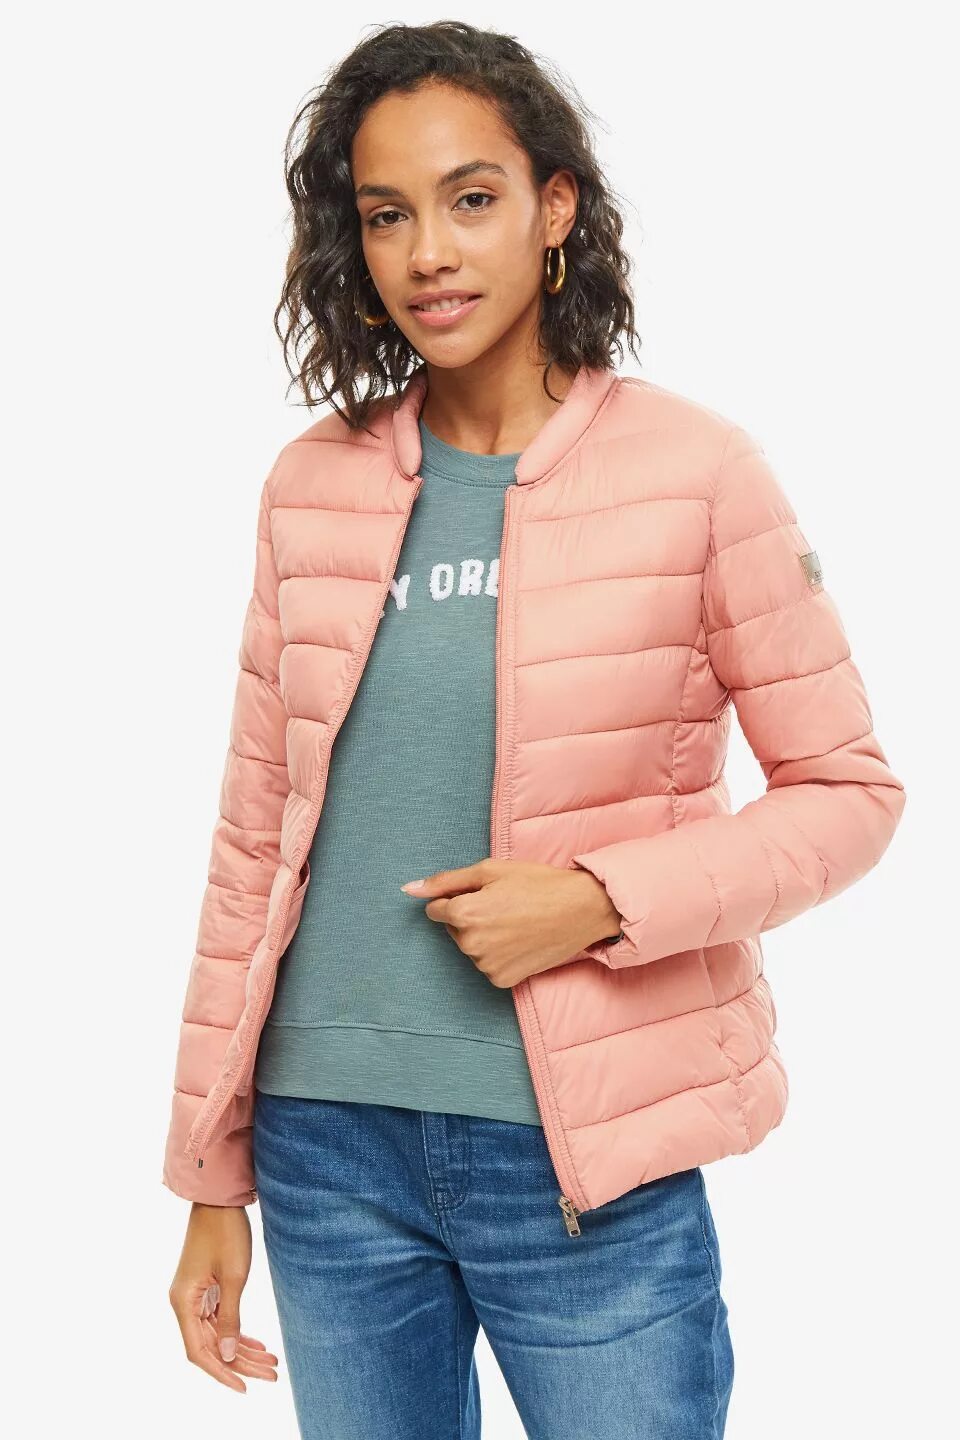 Roxy куртка розовая. Куртка Рокси розовая. Розовая женская куртка Рокси. Легкая куртка женская. Легкие куртки женские.